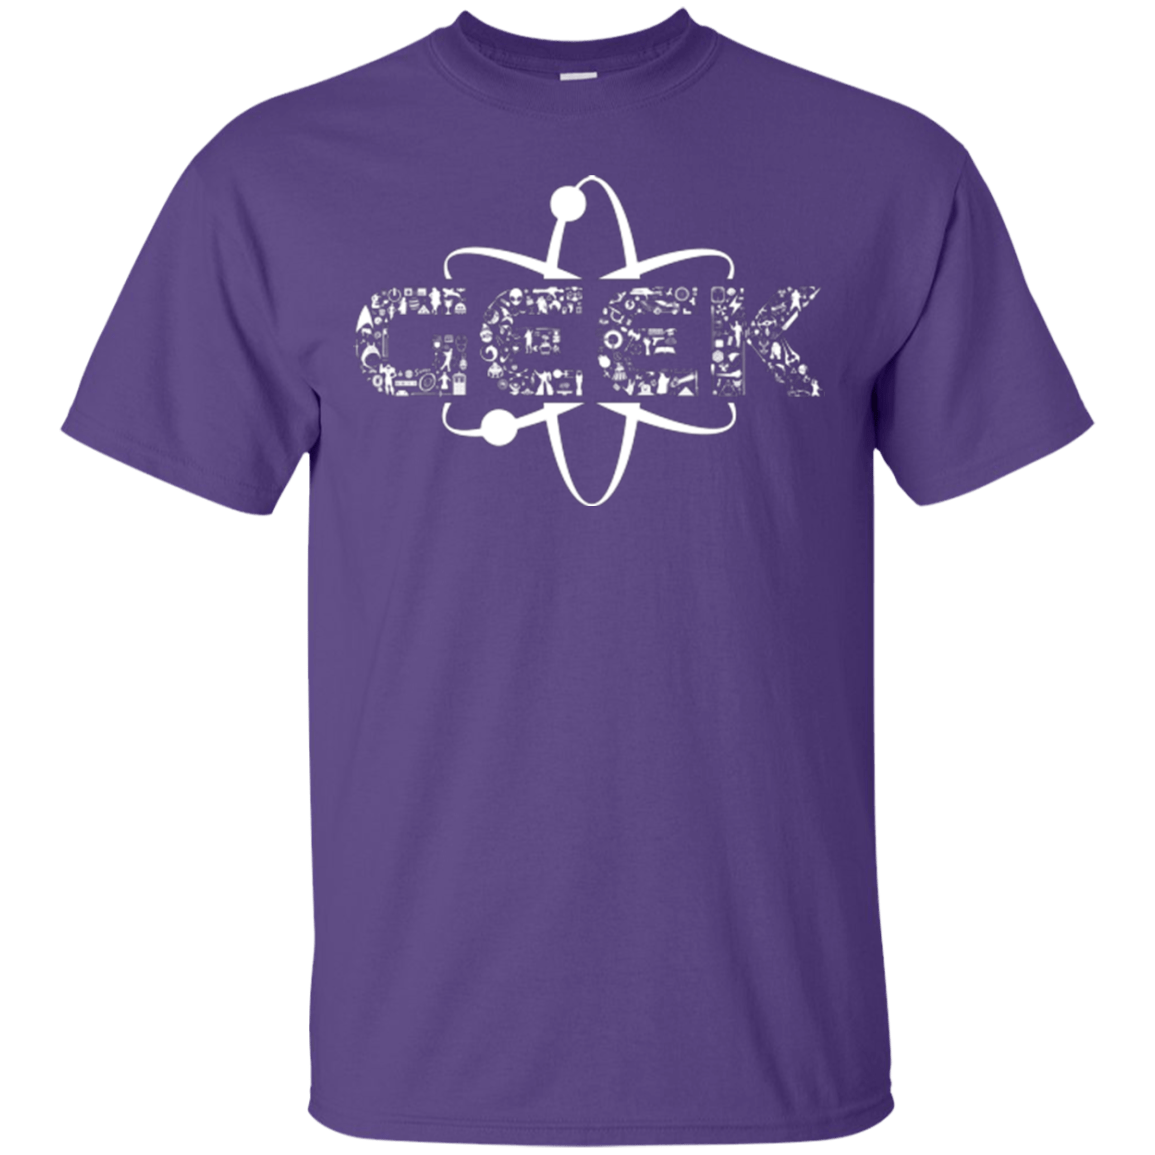 T-Shirts Purple / Small I Geek T-Shirt